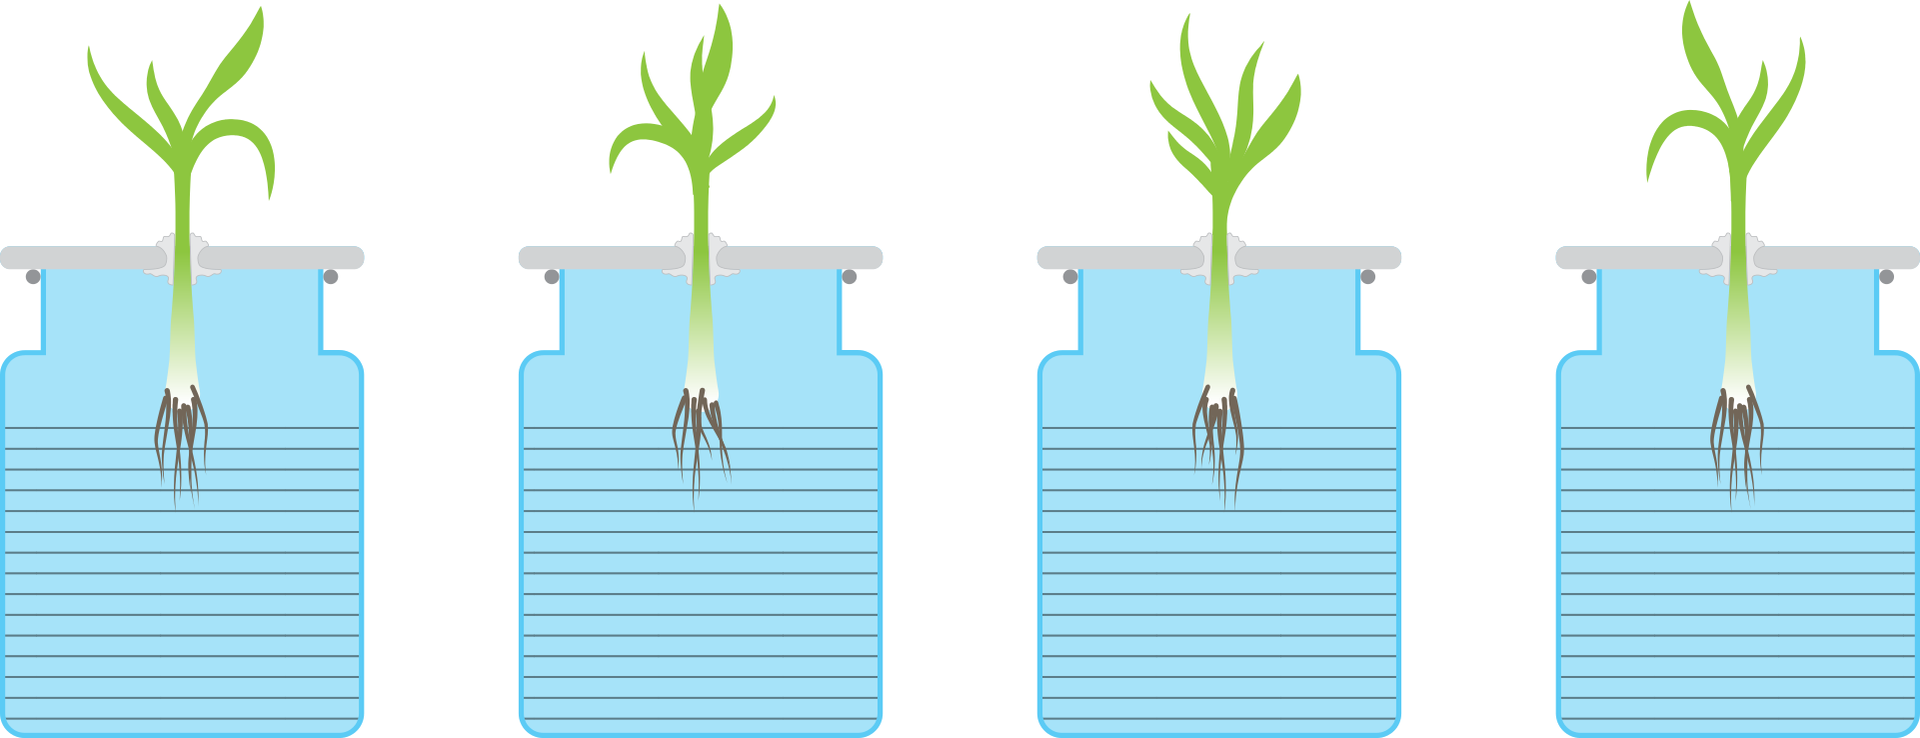 Grafika do doświadczenia. Przedstawia hydroponiczną uprawę roślin. Na grafice znajdują się cztery przezroczyste naczynia, w których zostały zanurzone kiełkujące sadzonki roślin.